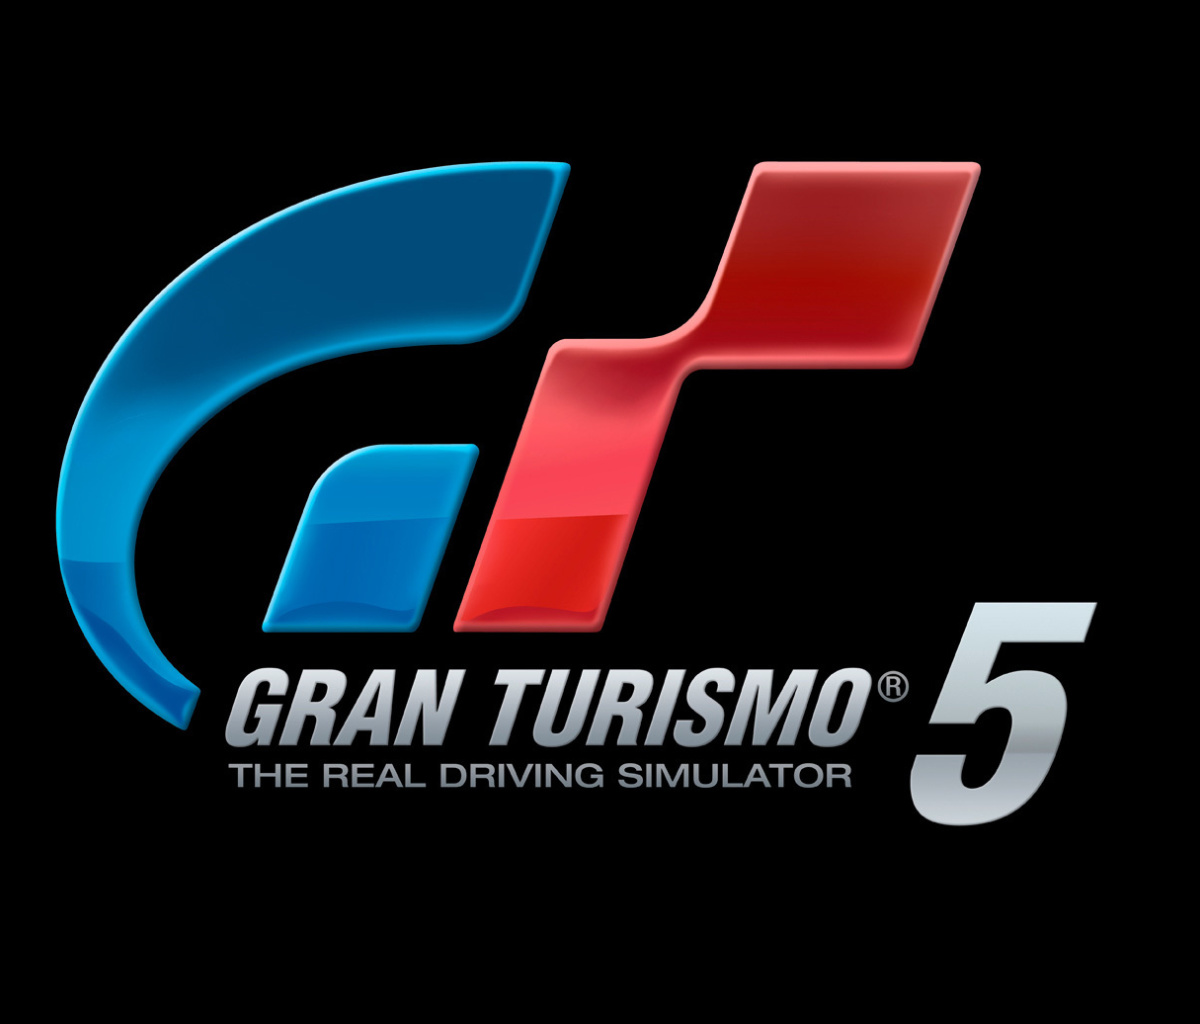 Gran Turismo 5 Driving Simulator wallpaper 1200x1024